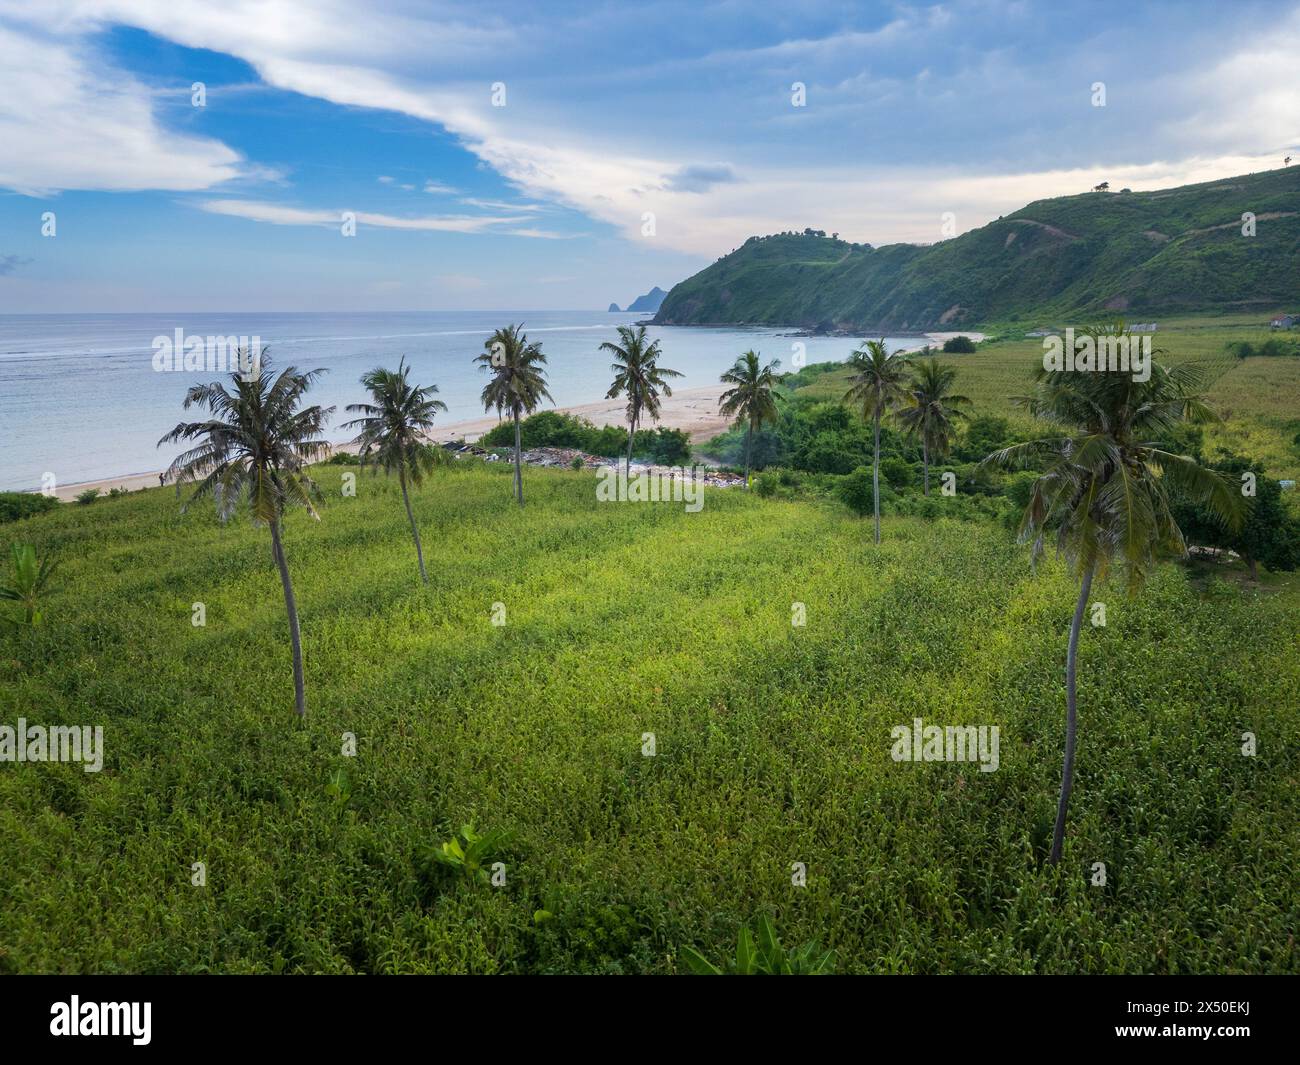 Palmiers poussant dans une rizière en terrasses en bord de mer, Lombok, Indonésie Banque D'Images